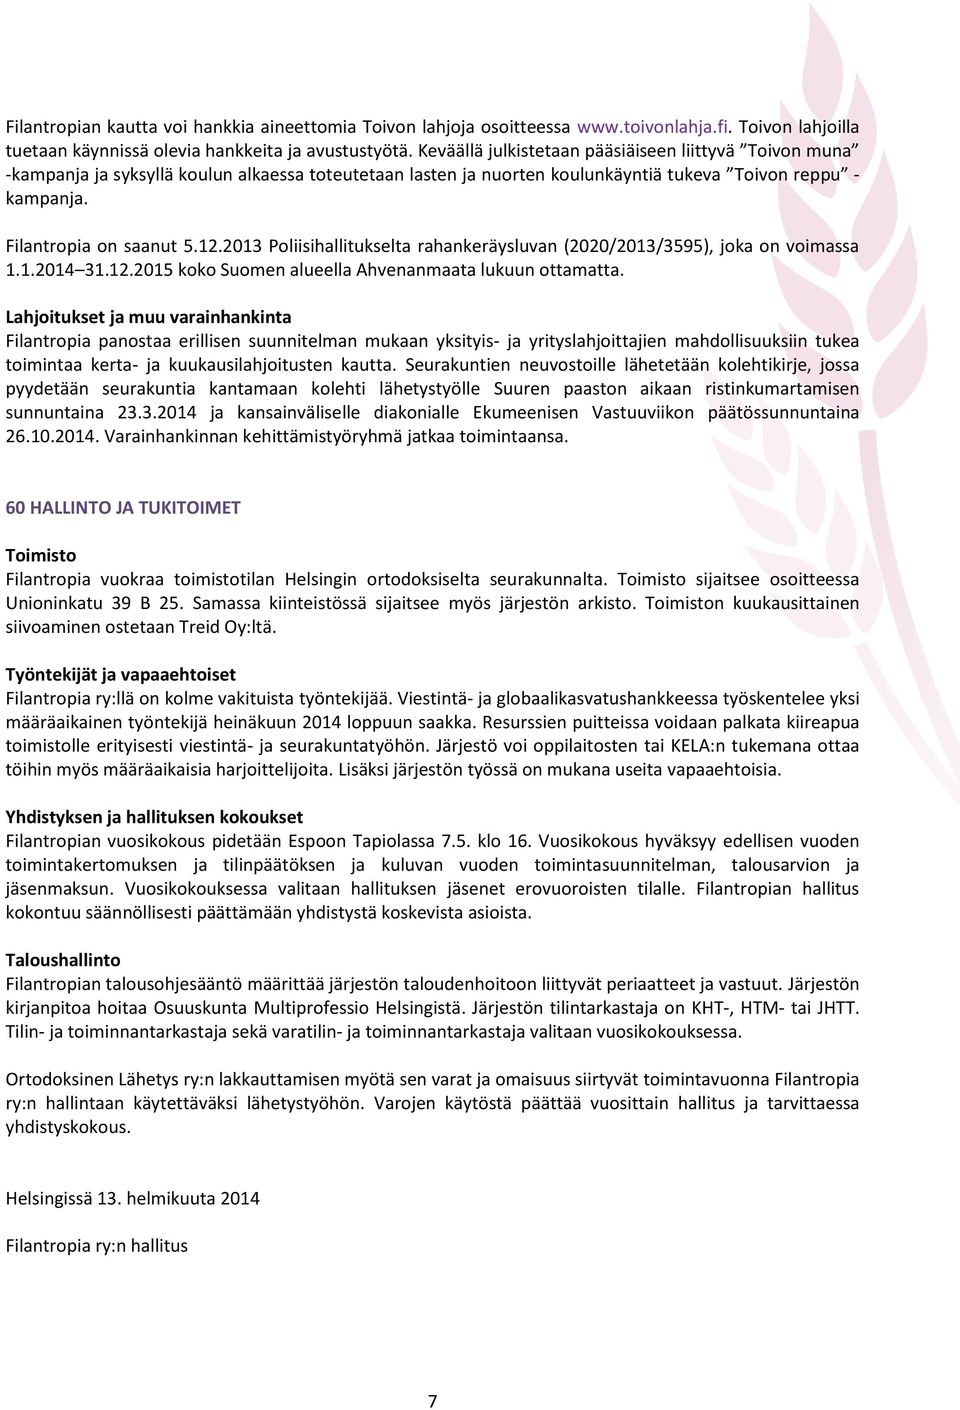 2013 Poliisihallitukselta rahankeräysluvan (2020/2013/3595), joka on voimassa 1.1.2014 31.12.2015 koko Suomen alueella Ahvenanmaata lukuun ottamatta.